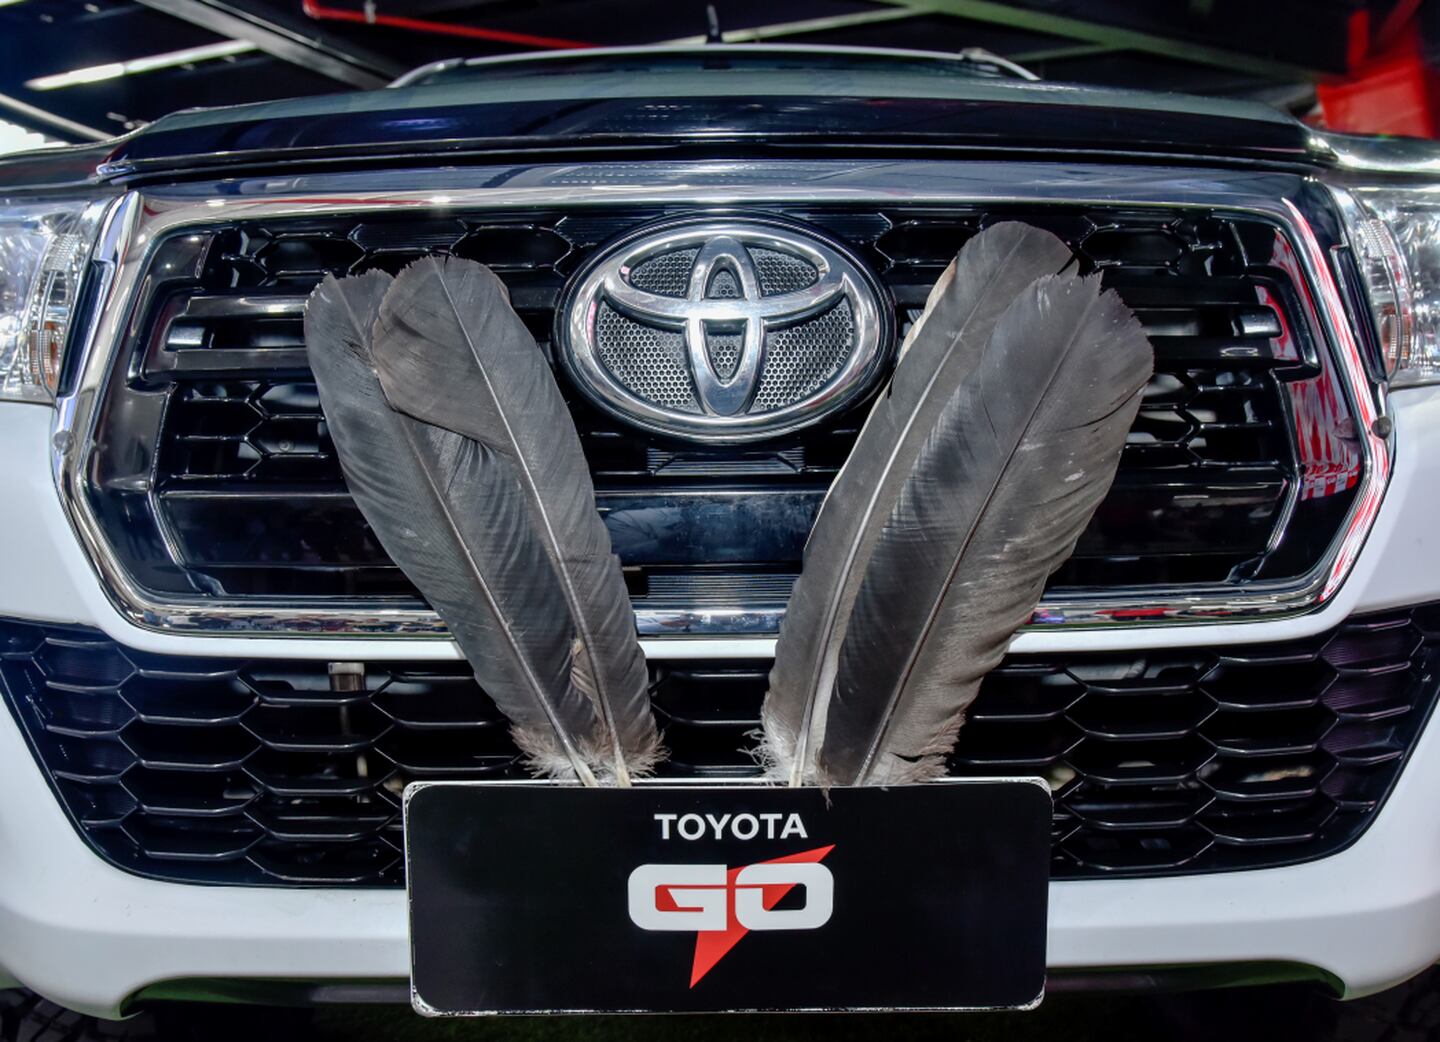 Fundación Cóndor Andino y la comunidad Toyota Go unen esfuerzos